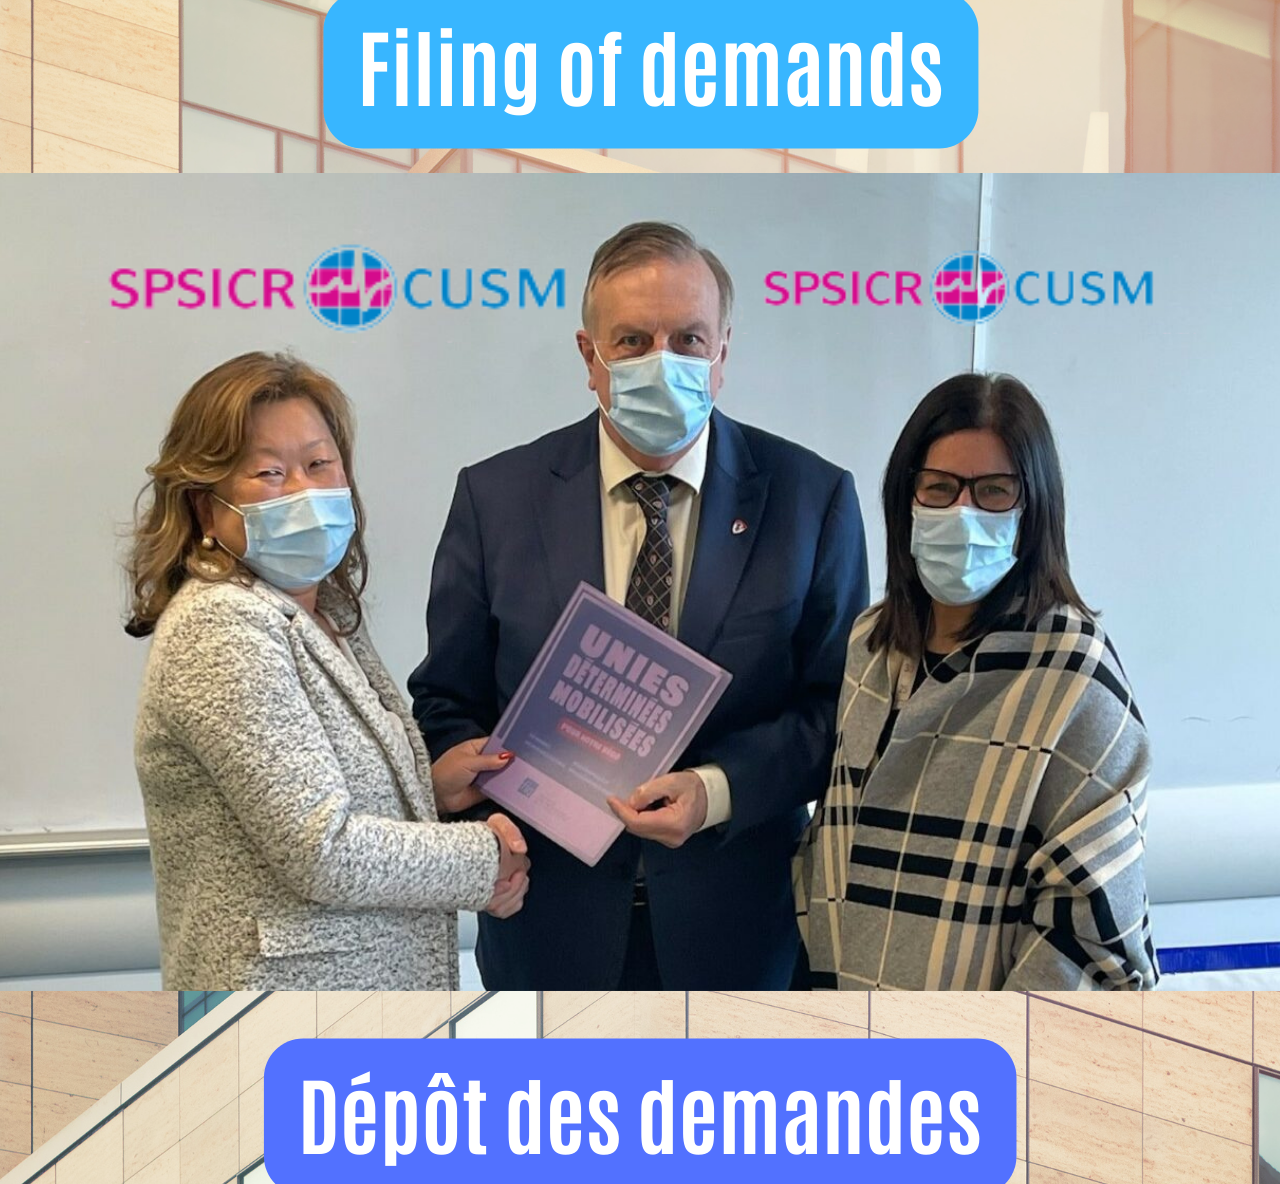 Dépot des demandes Négo 2022- Nego 2022 deposit of the demands